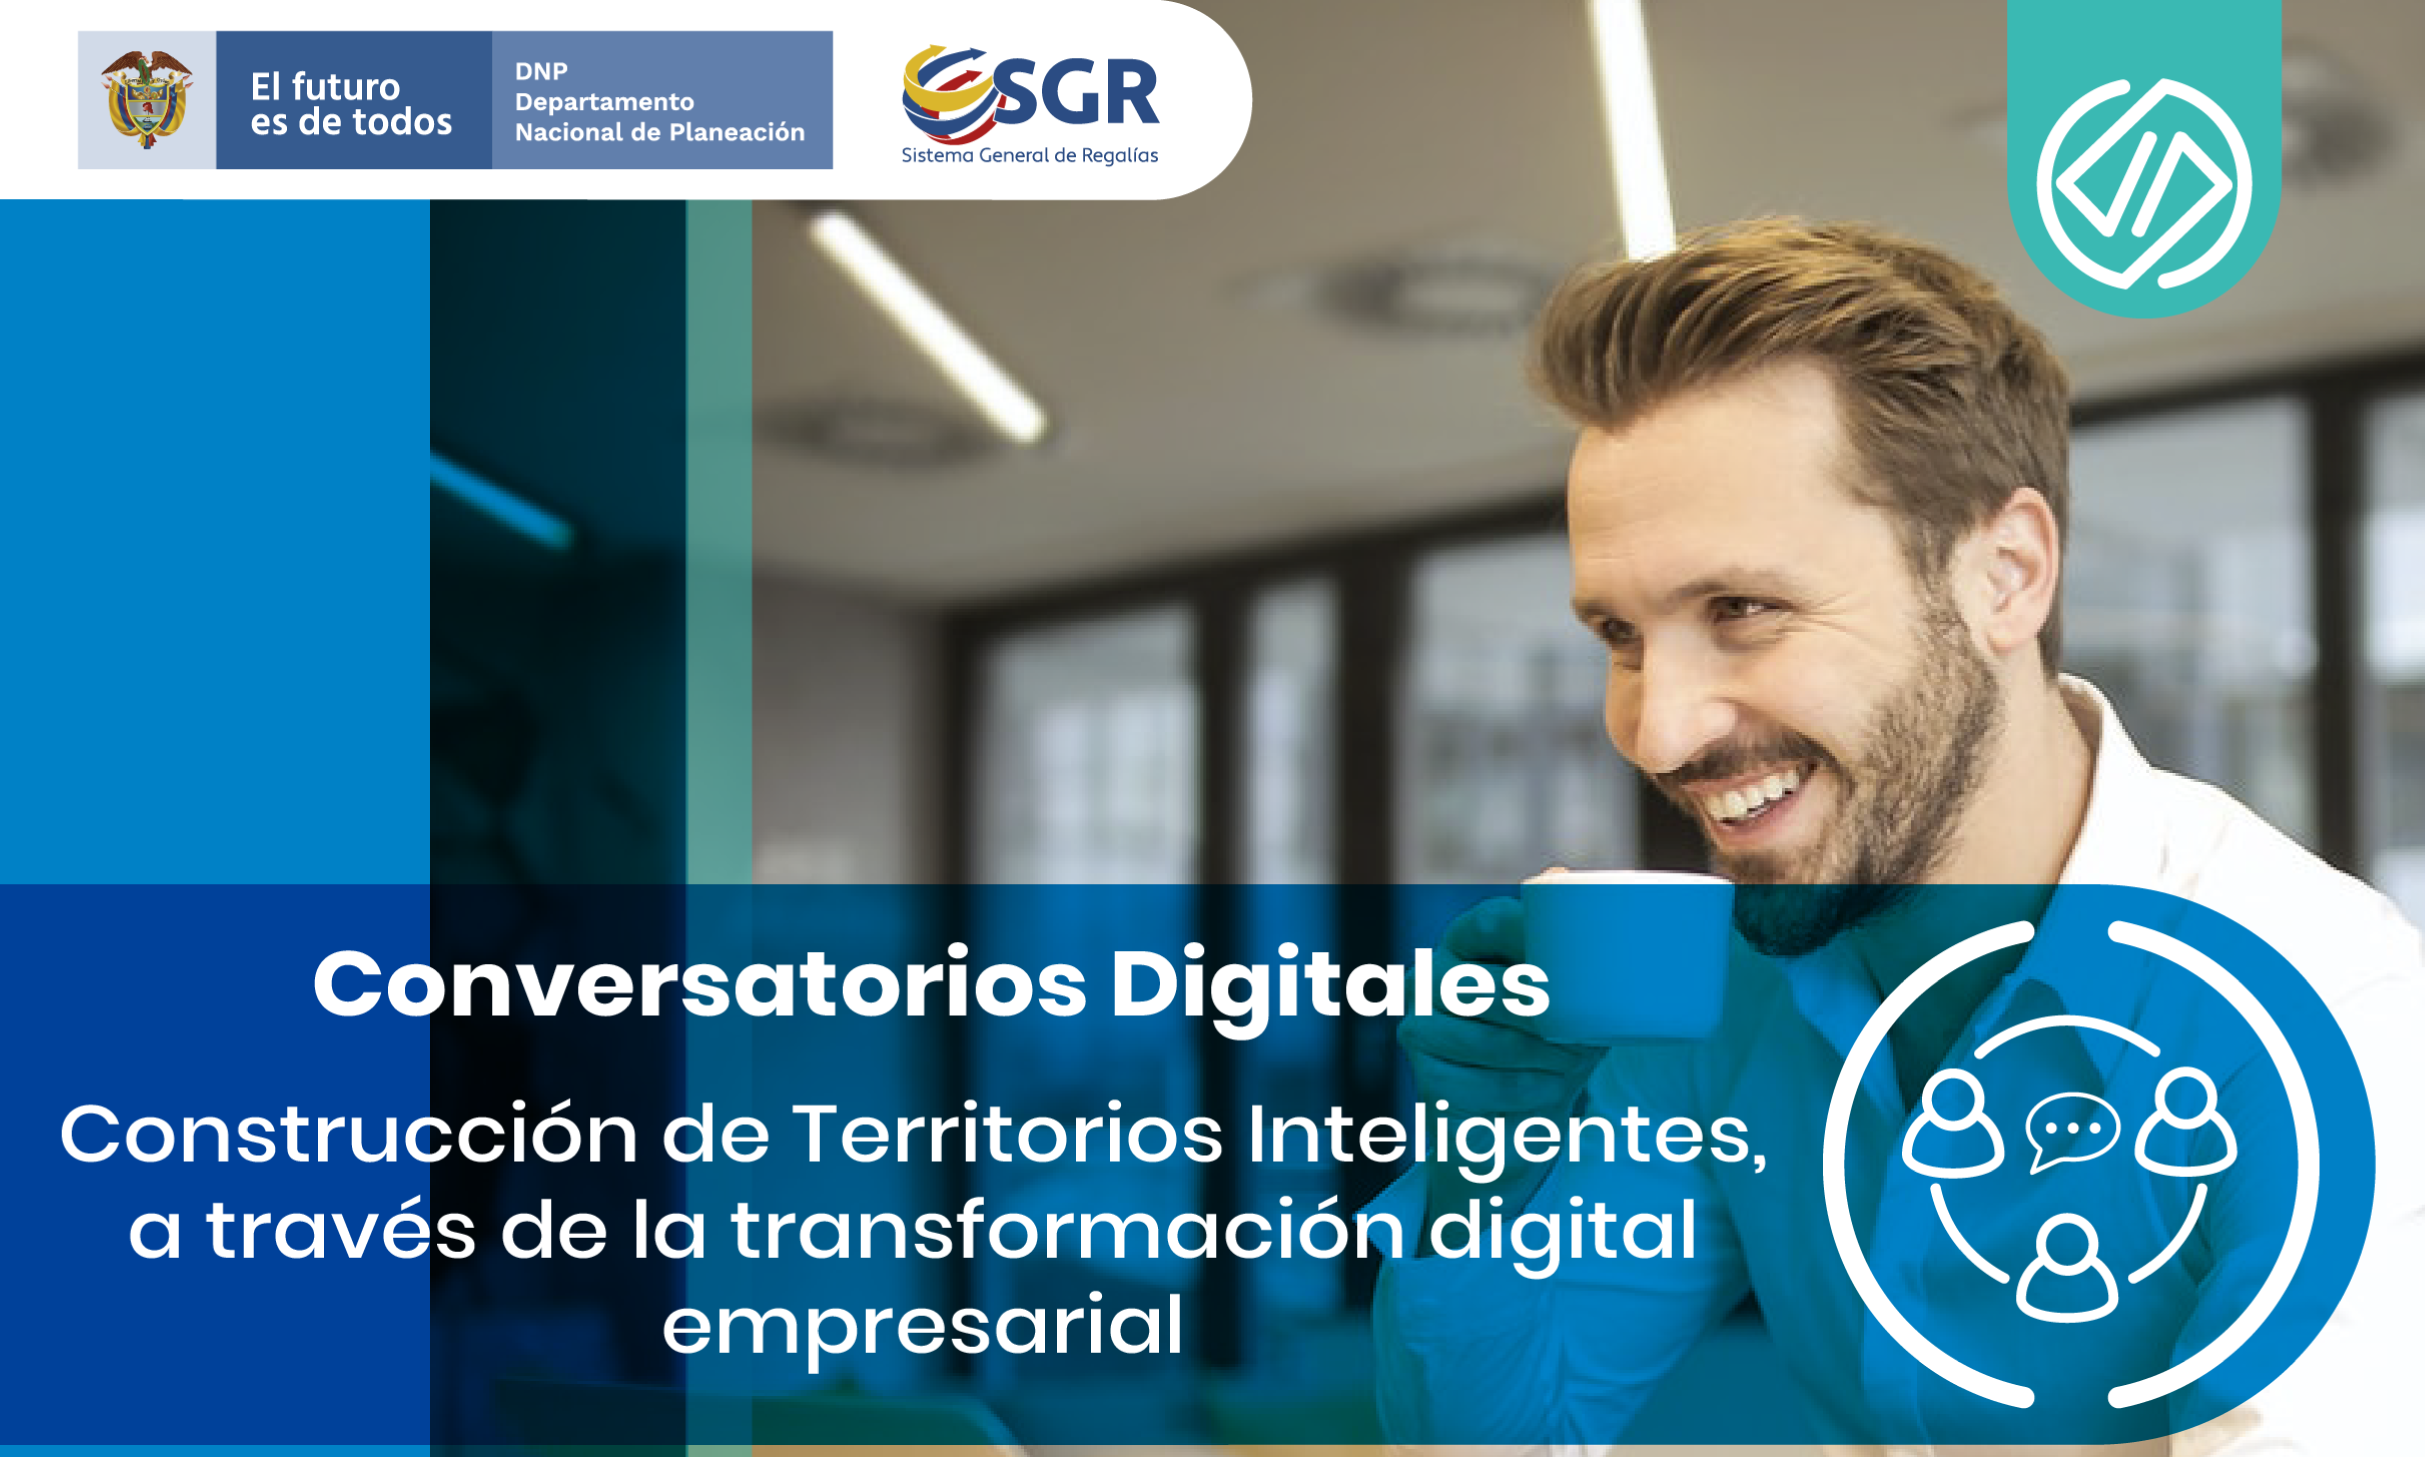 Datic invita al conversatorio “Construcción de territorios inteligentes a través de la transformación digital empresarial”